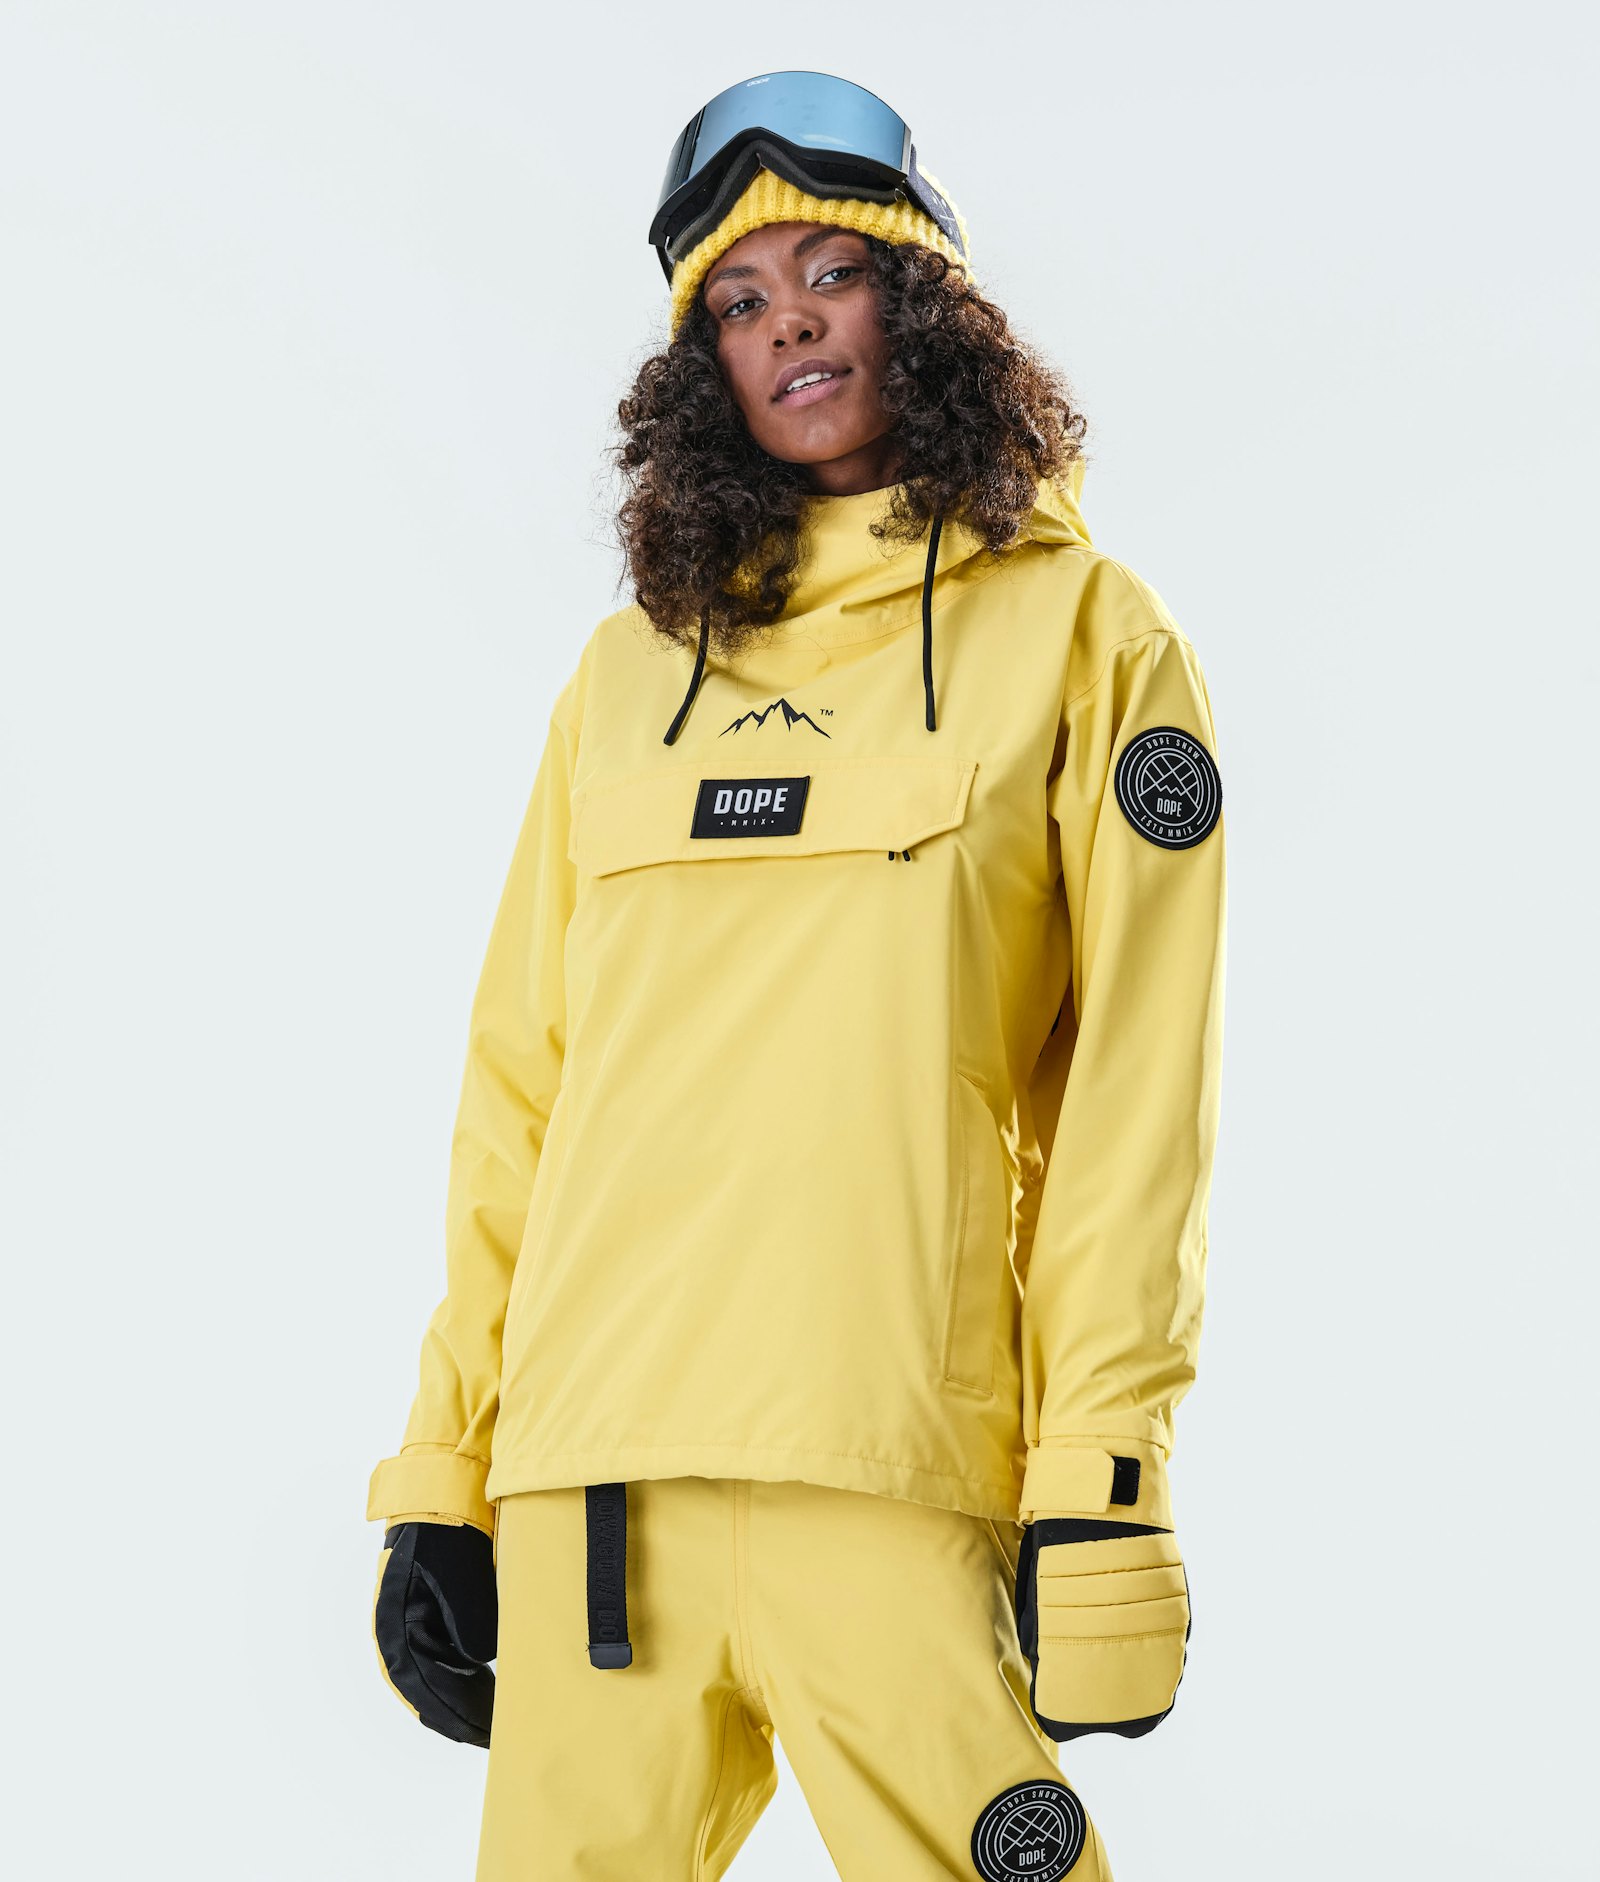 Blizzard W 2020 Ski Jacket Women Faded Yellow